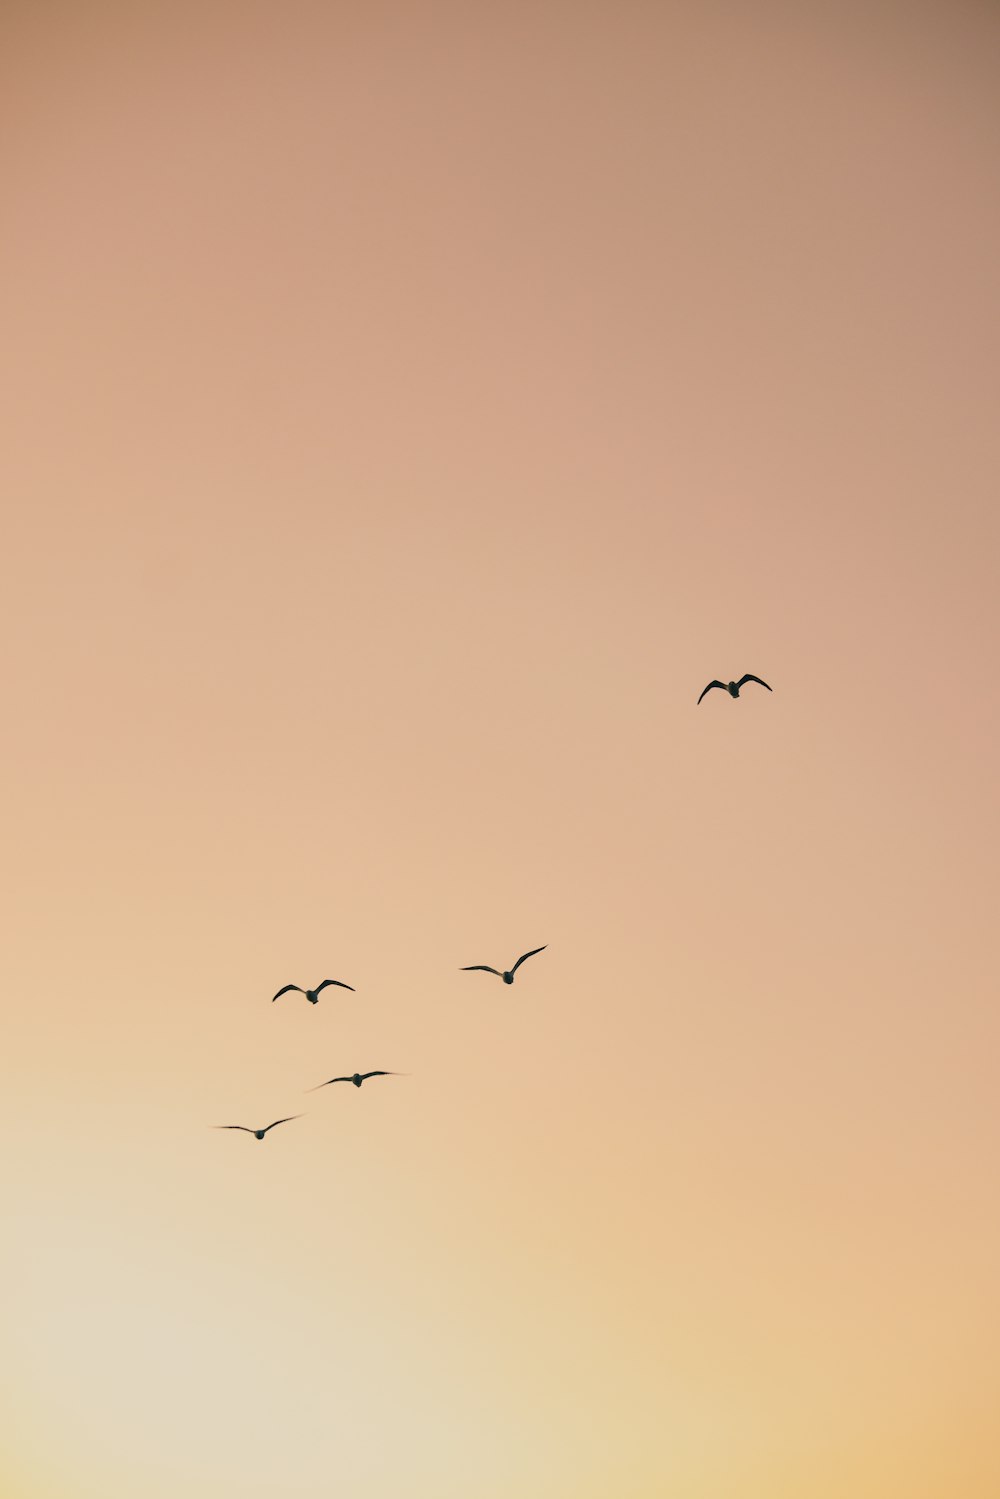 pájaros volando en el cielo